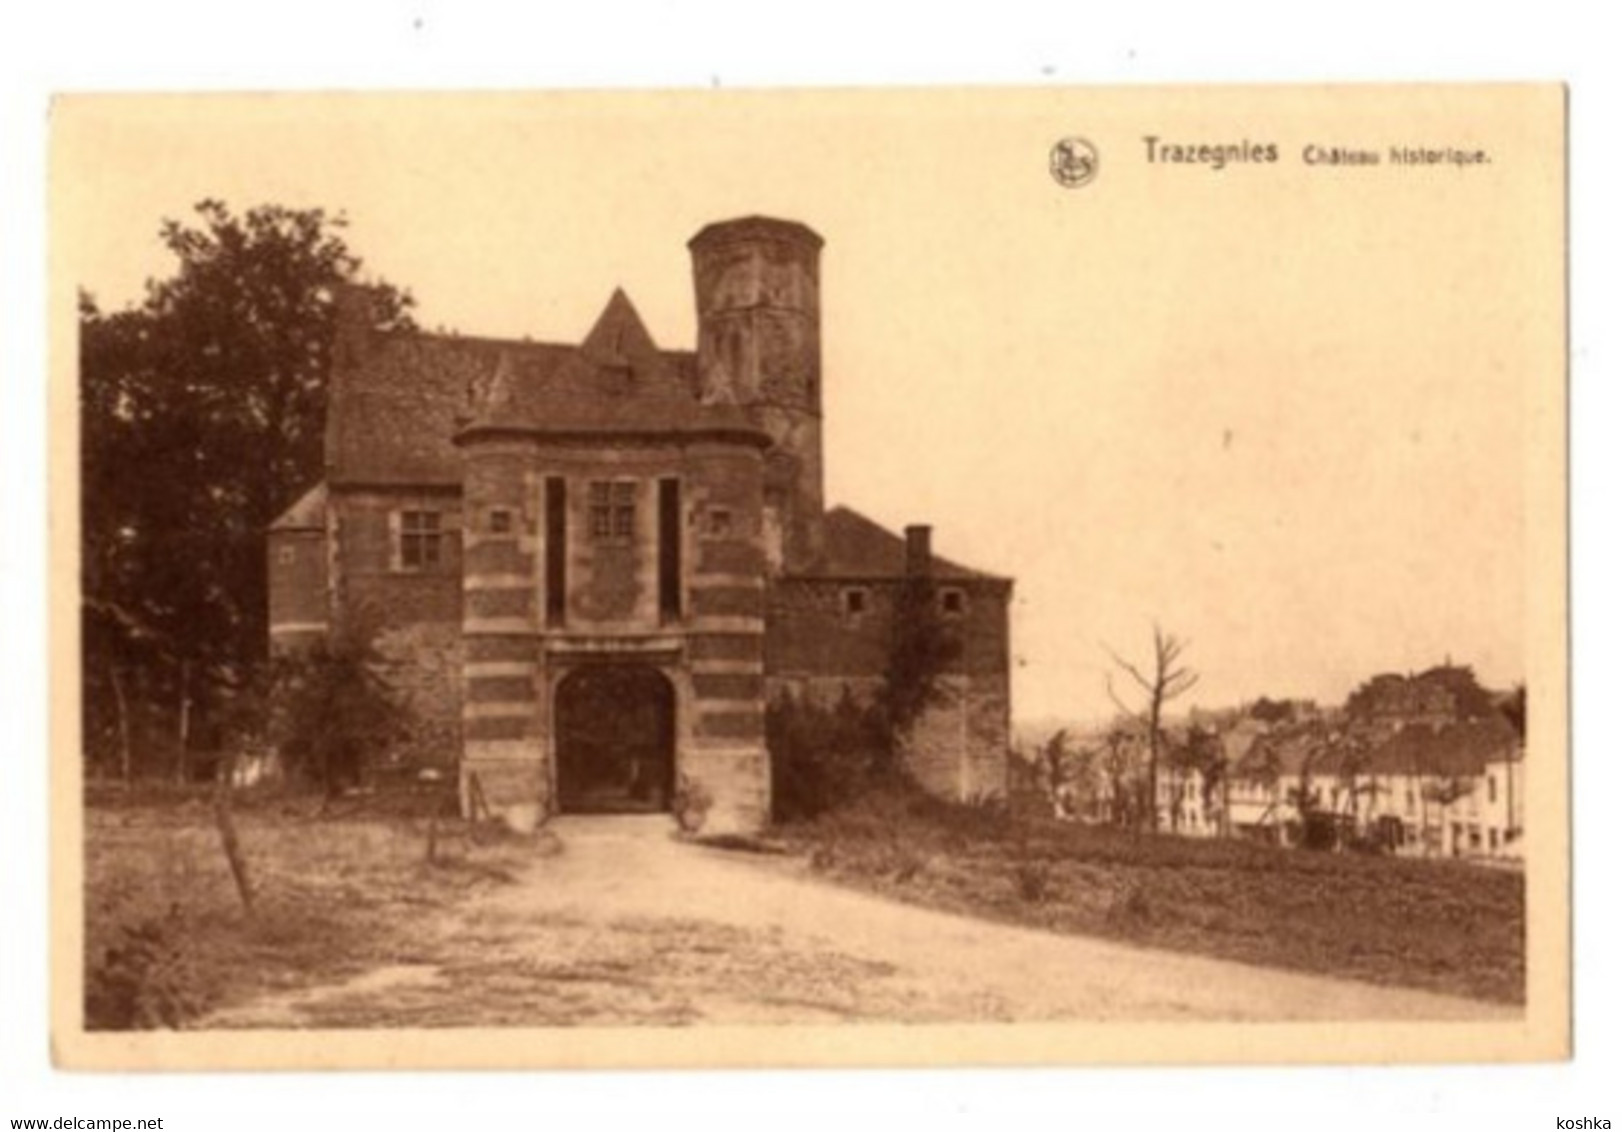 TRAZEGNIES - Château Historique- 1949 - Courcelles